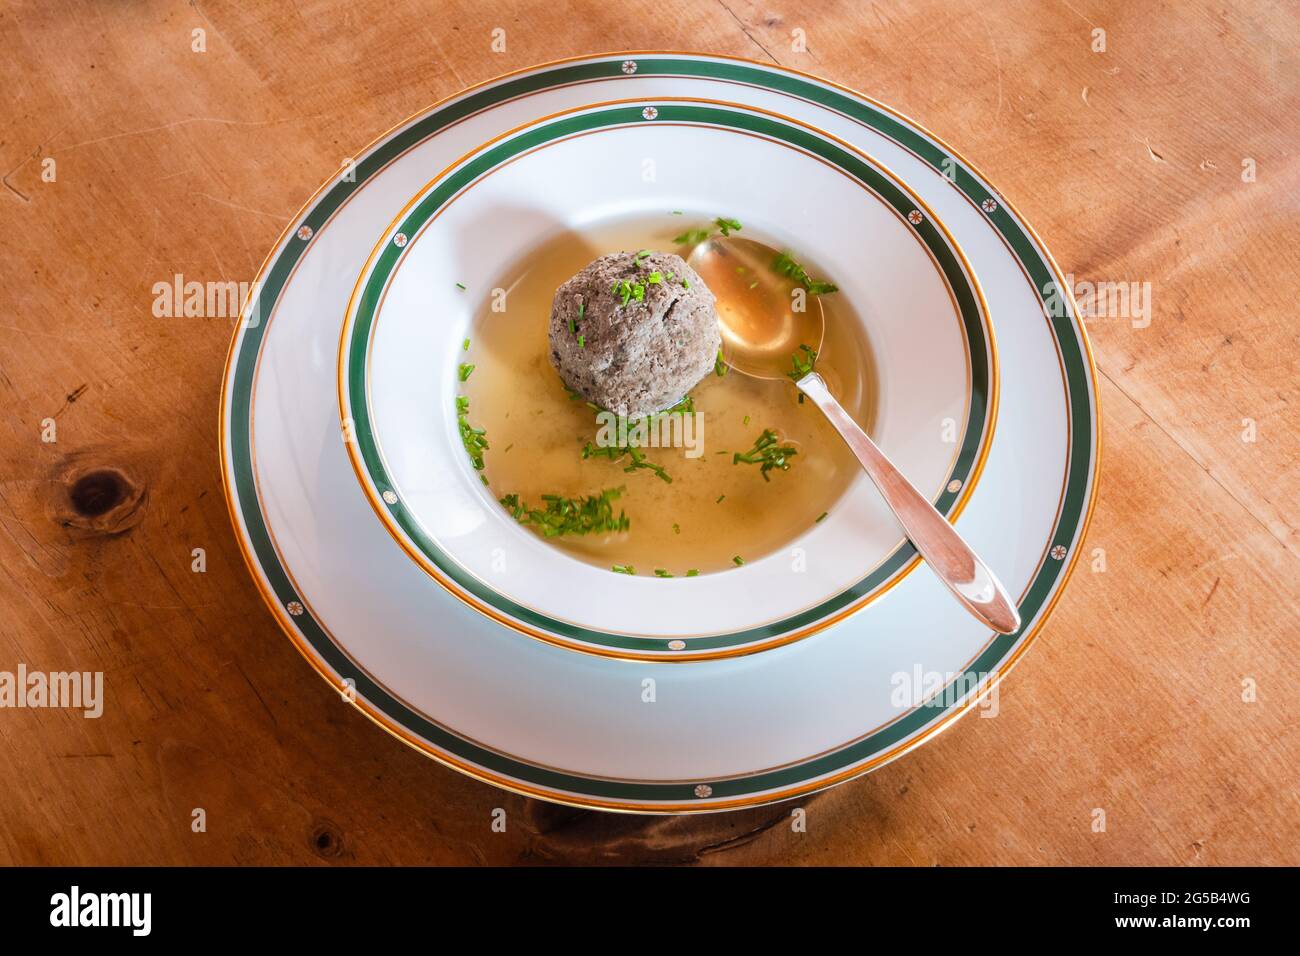 Leberknodelsuppe, una zuppa austriaca di fegato fittizio, una brodo di manzo con erba cipollina con cucchiaio Foto Stock